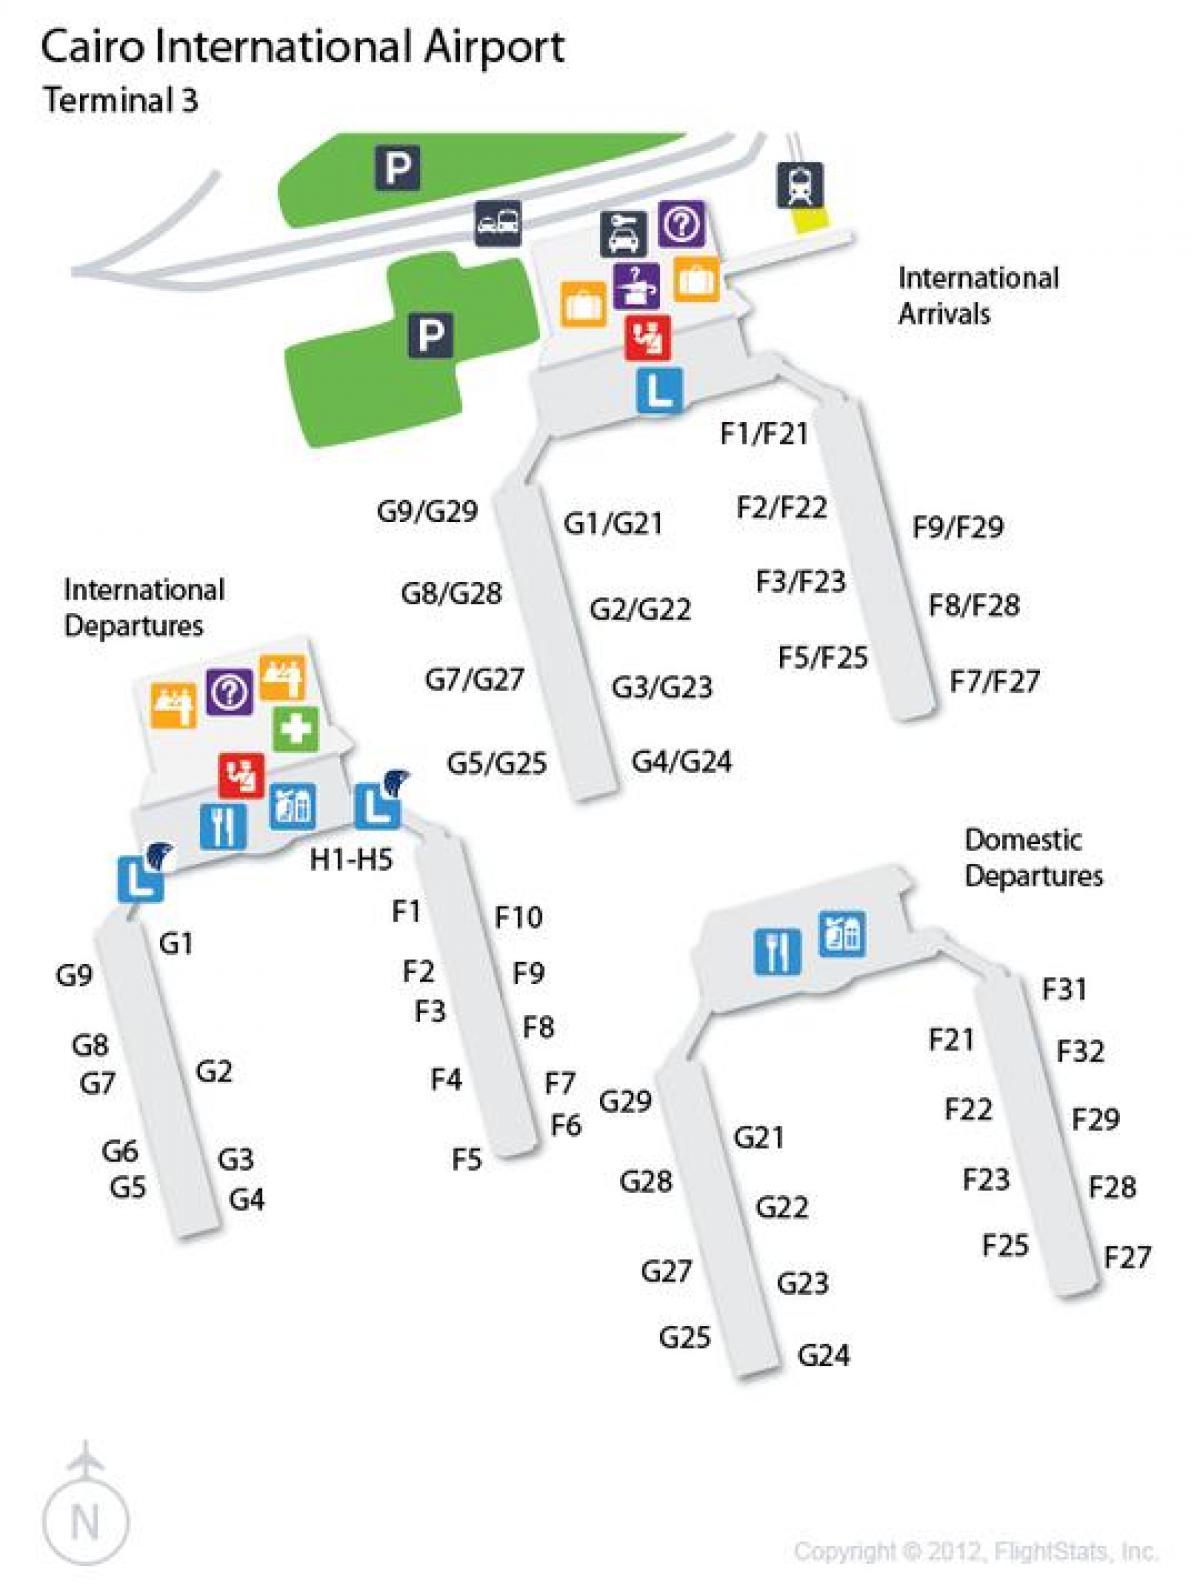 แผนที่ของไคโรสนามบินเทอร์มินัล